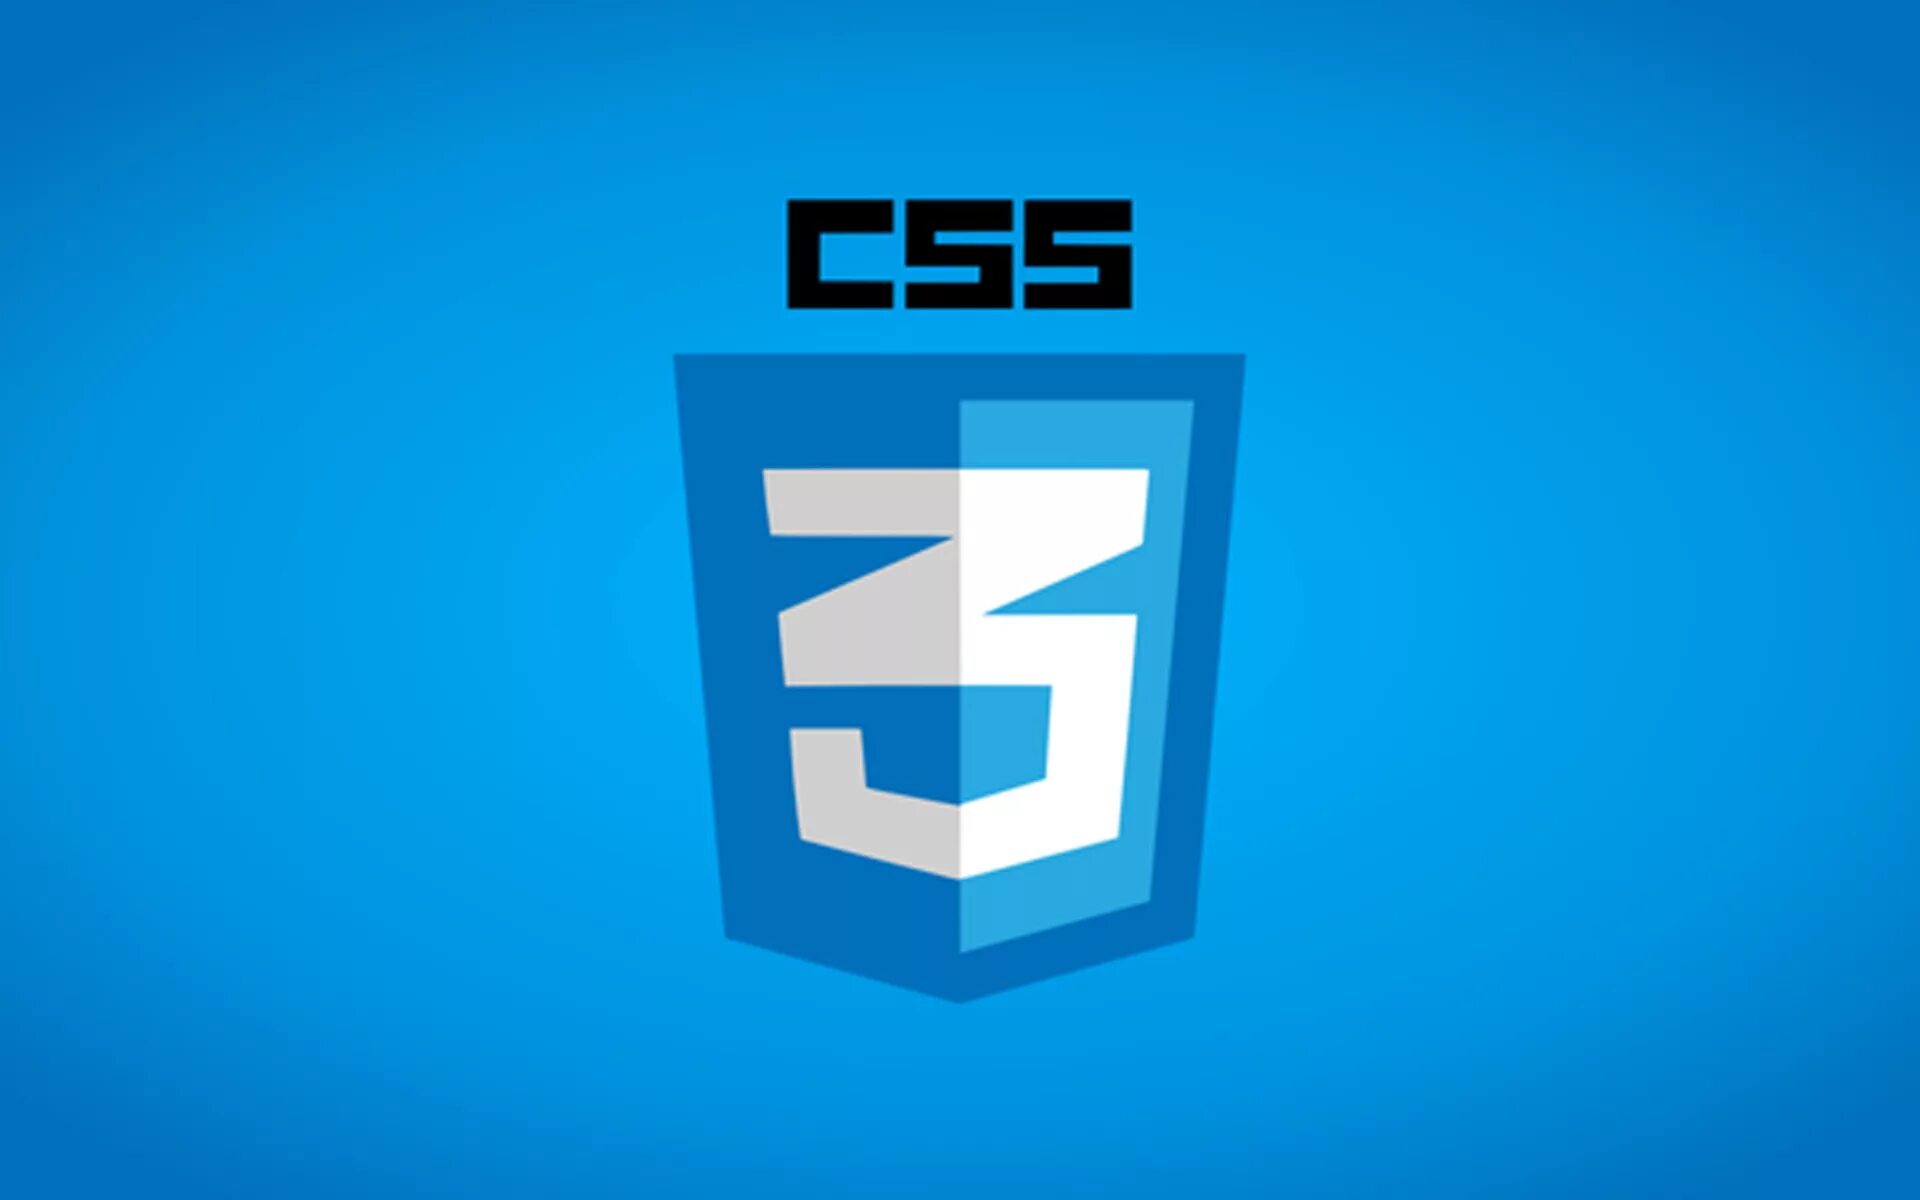 C image source. Css3 логотип. CSS. Язык CSS. CSS лого.